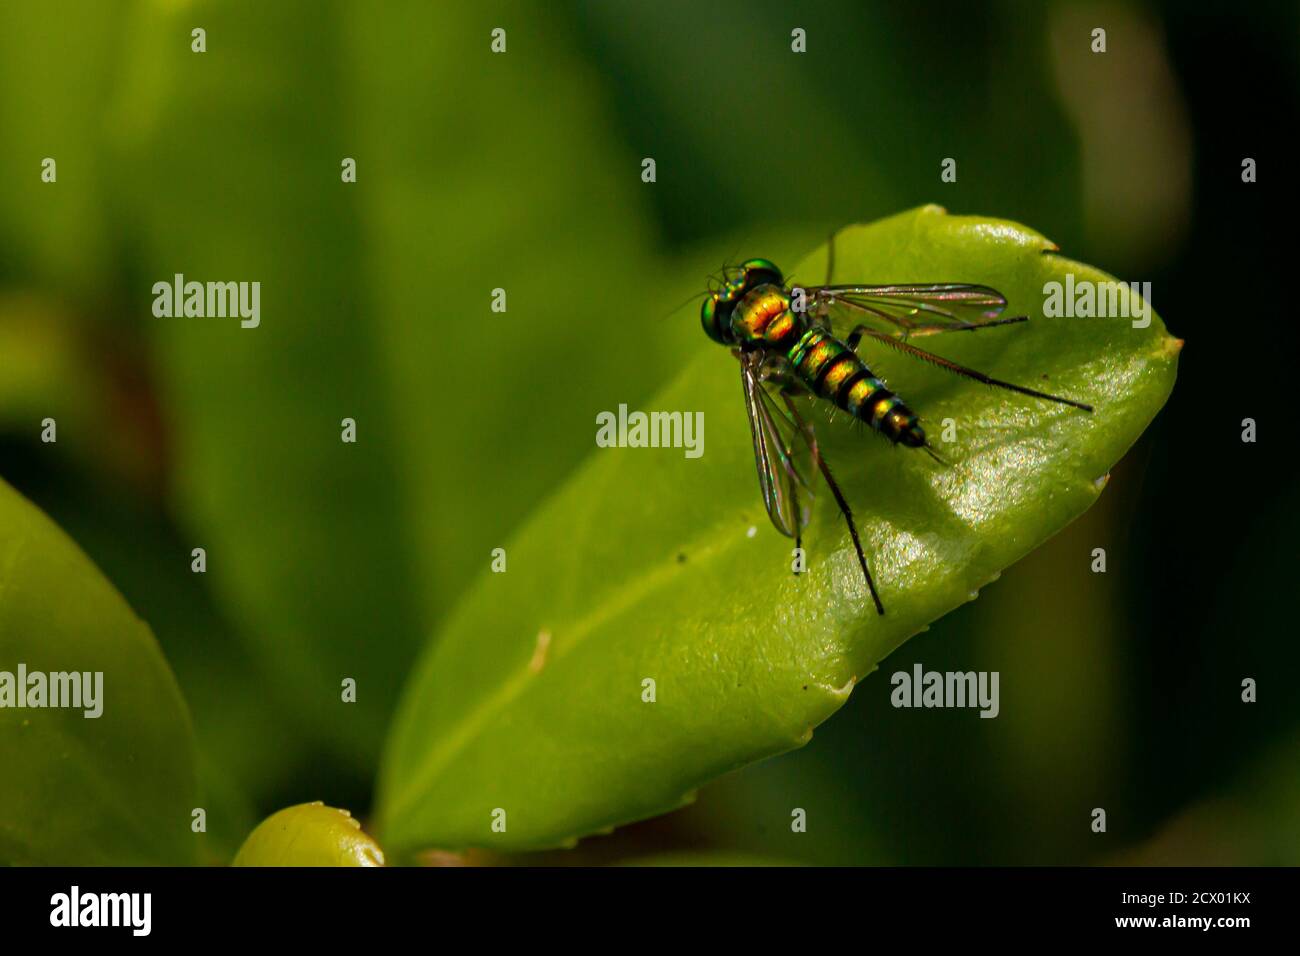 Nahaufnahme eines CondyloStylus caudatus fliegen auf einem Blatt. Das Makrolinsenbild zeigt die Details des schlanken, haarigen Gehäuses, der leuchtenden metallisch-grünen Farbe und Stockfoto